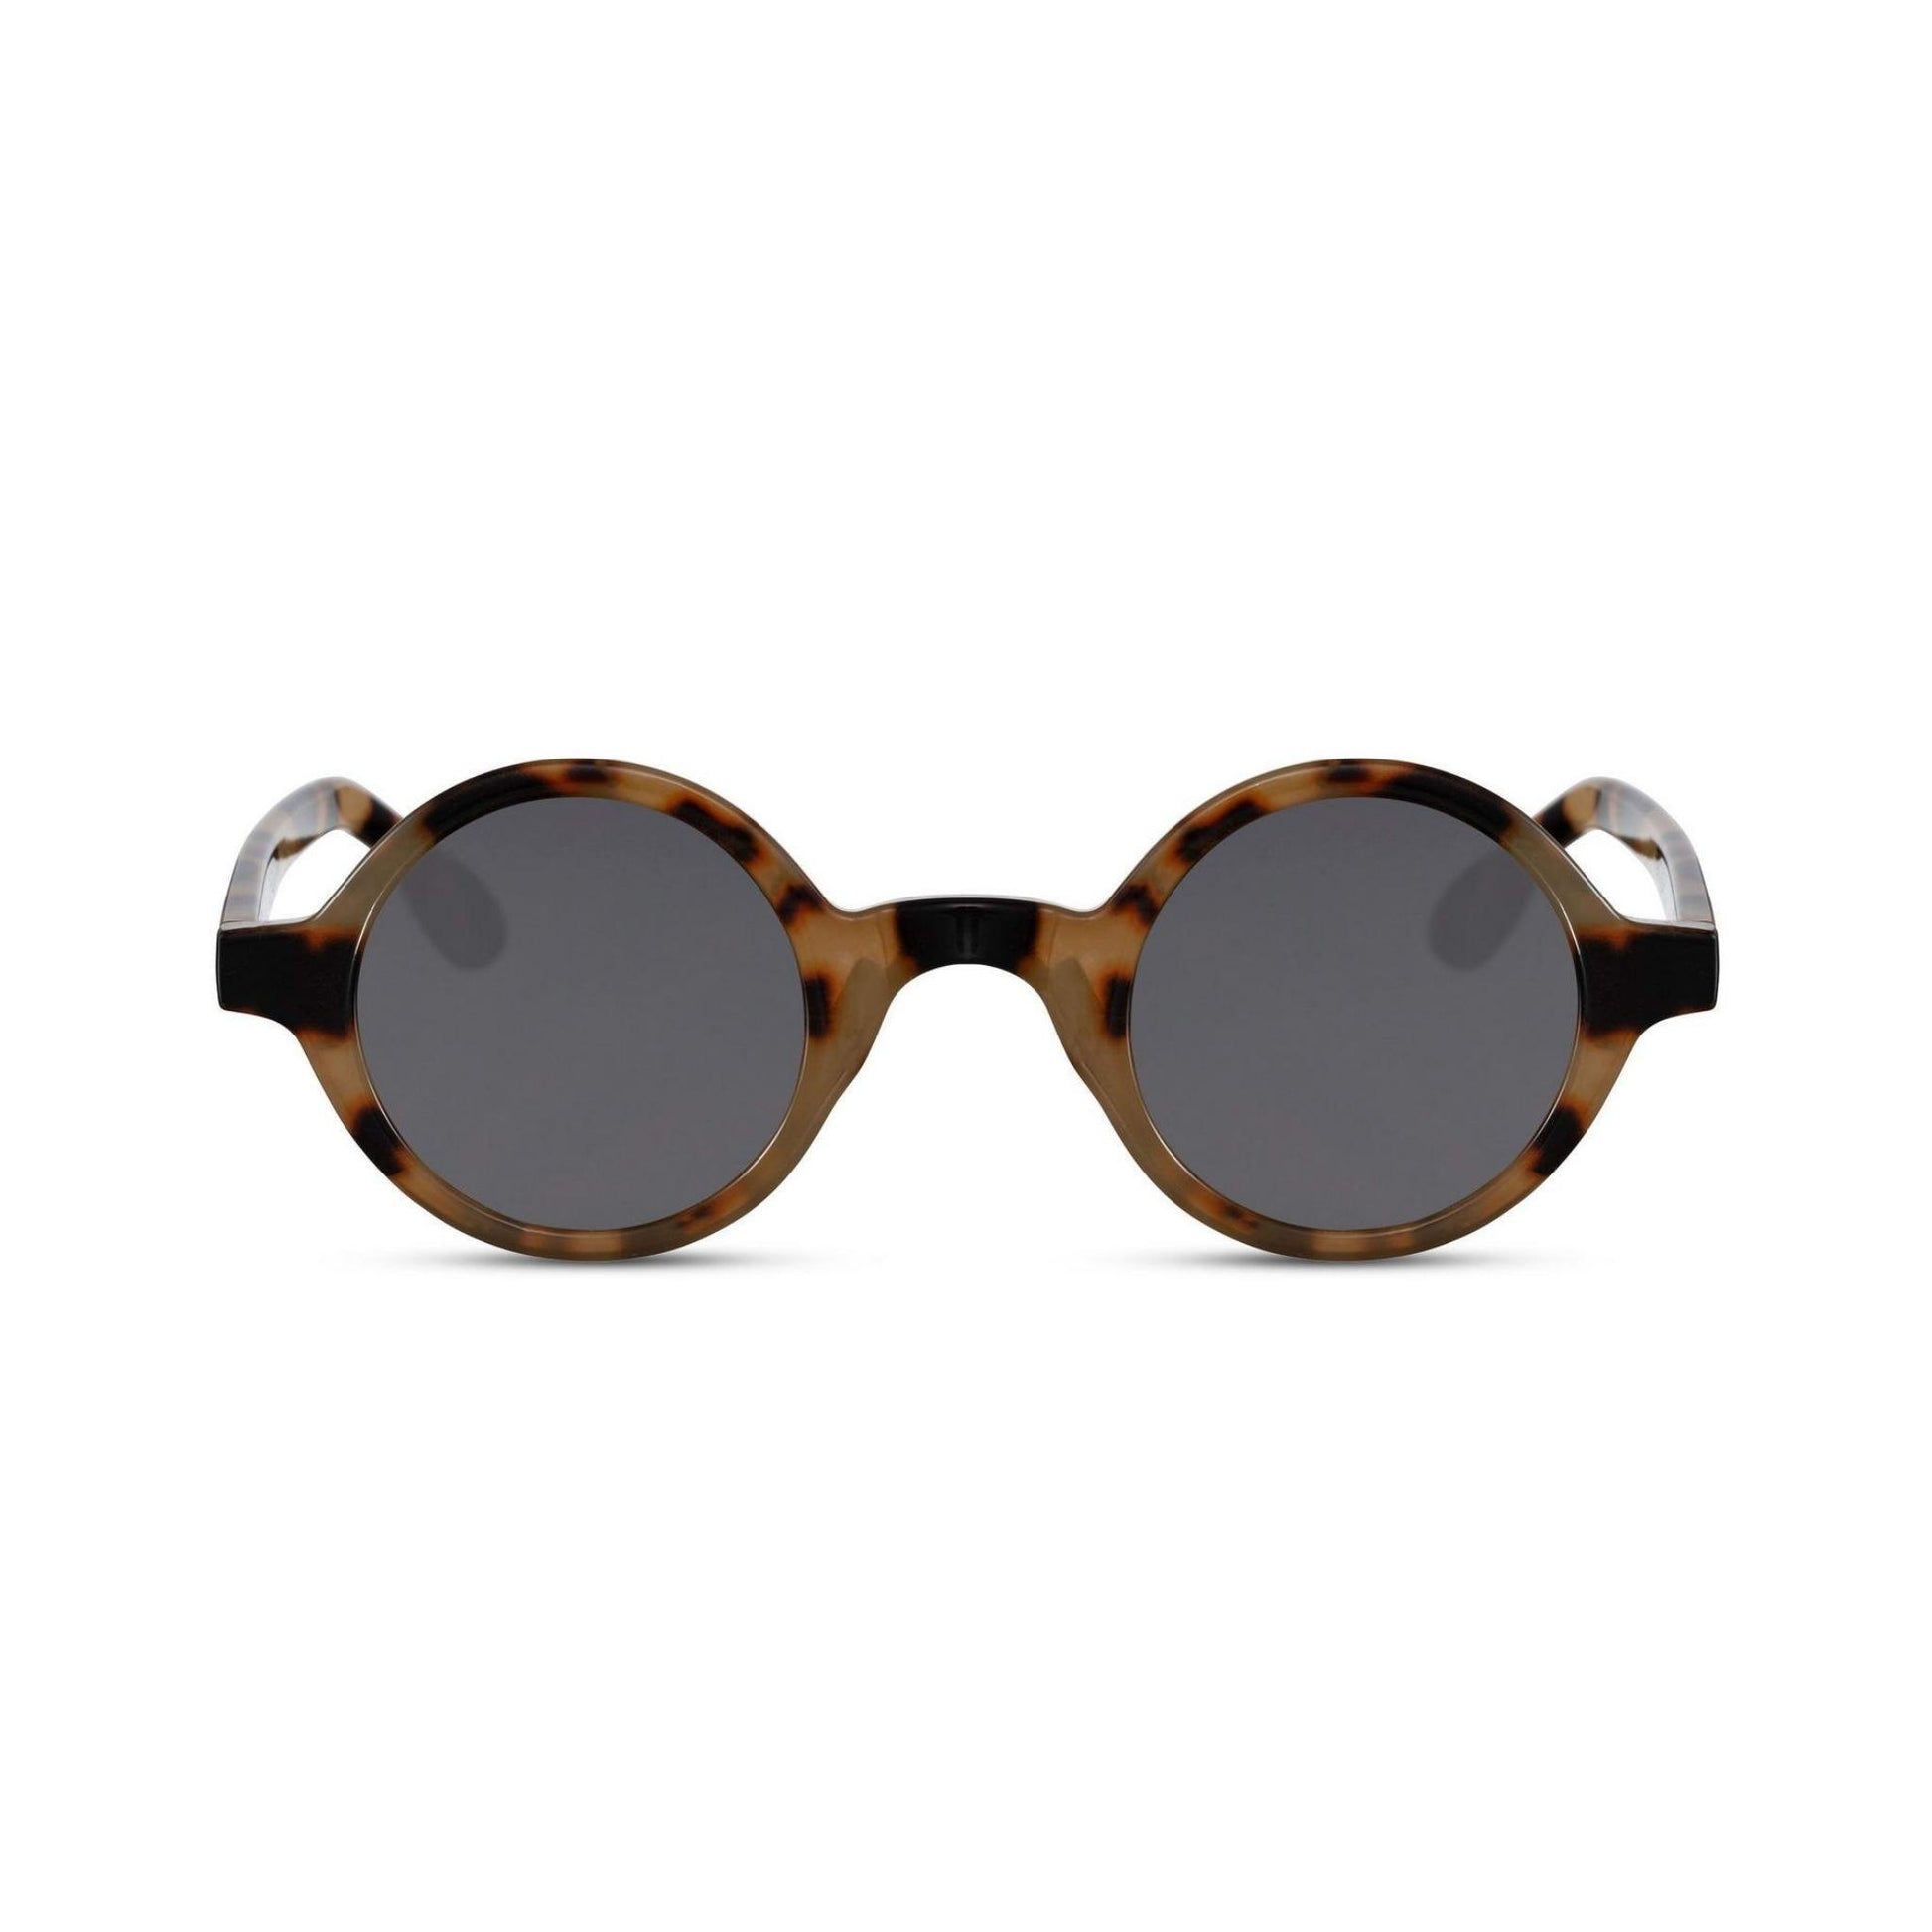 Στρογγυλά Γυαλιά Ηλίου Aurora της Exposure Sunglasses με προστασία UV400 σε καφέ χρώμα σκελετού και μαύρο φακό.